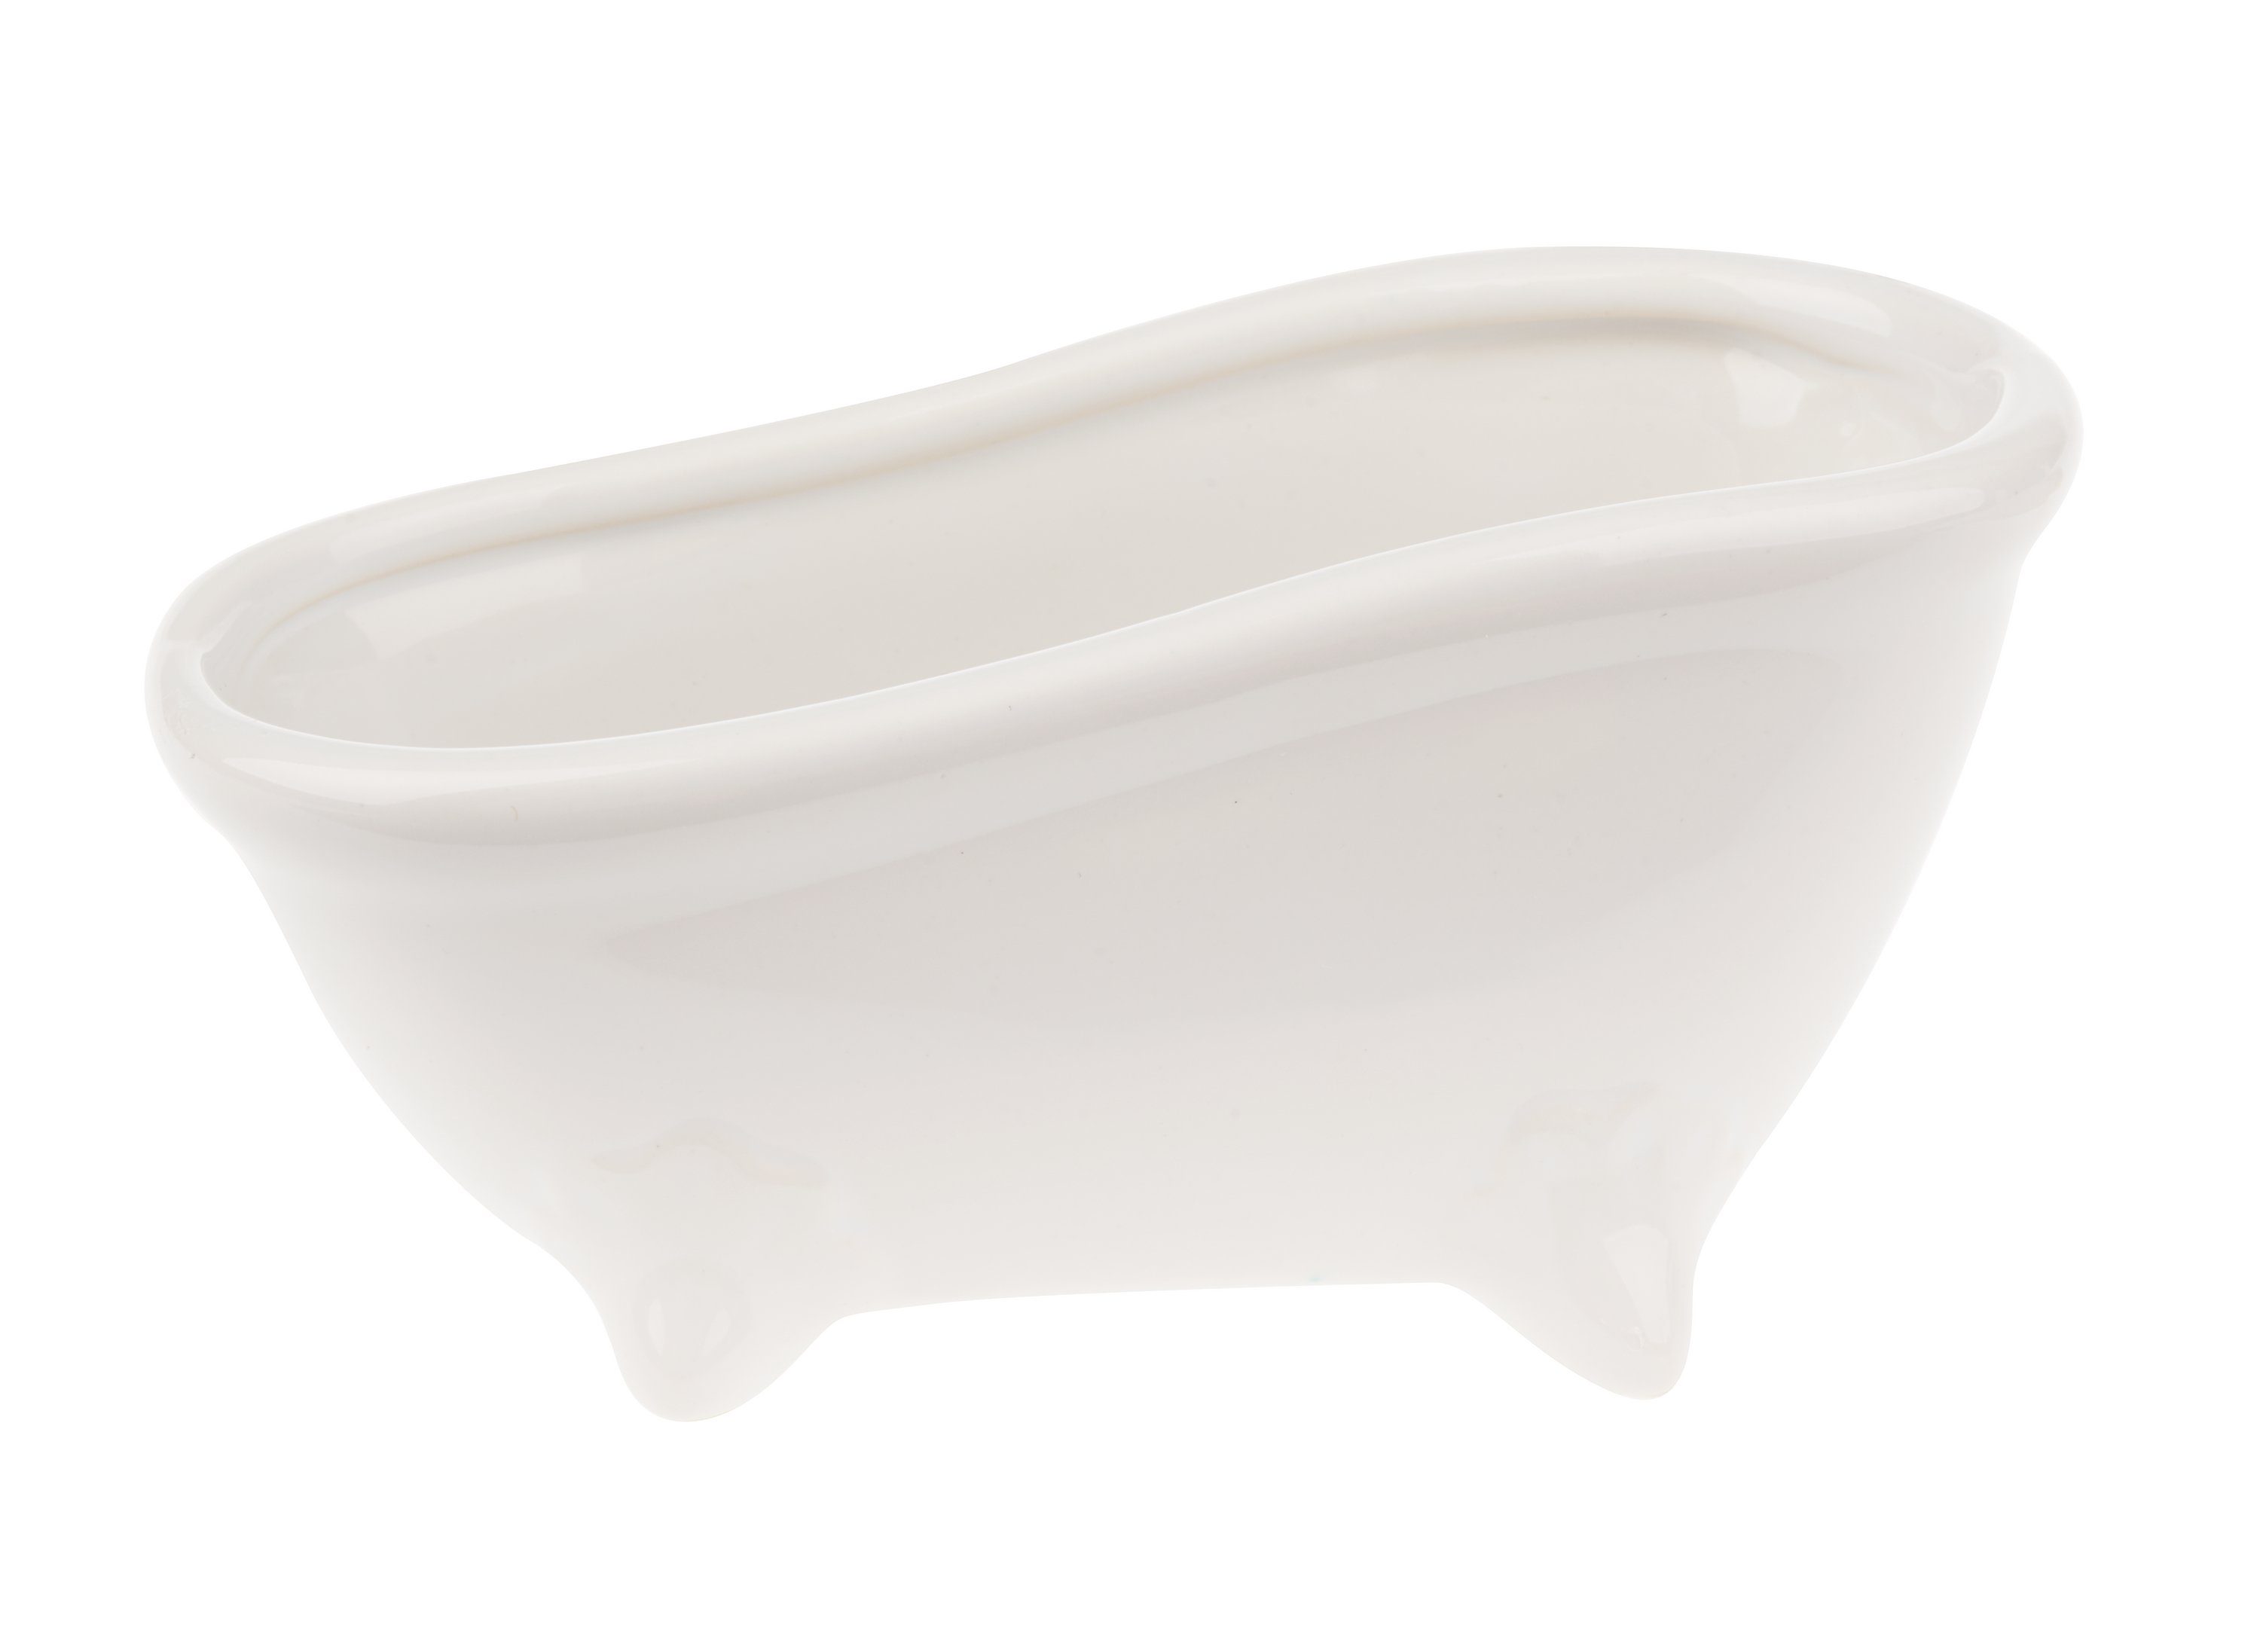 HobbyFun Seifenschale Keramik-Seifenschale Badewanne, Breite: 7 cm,  15x7x7,2cm, weiß glänzend